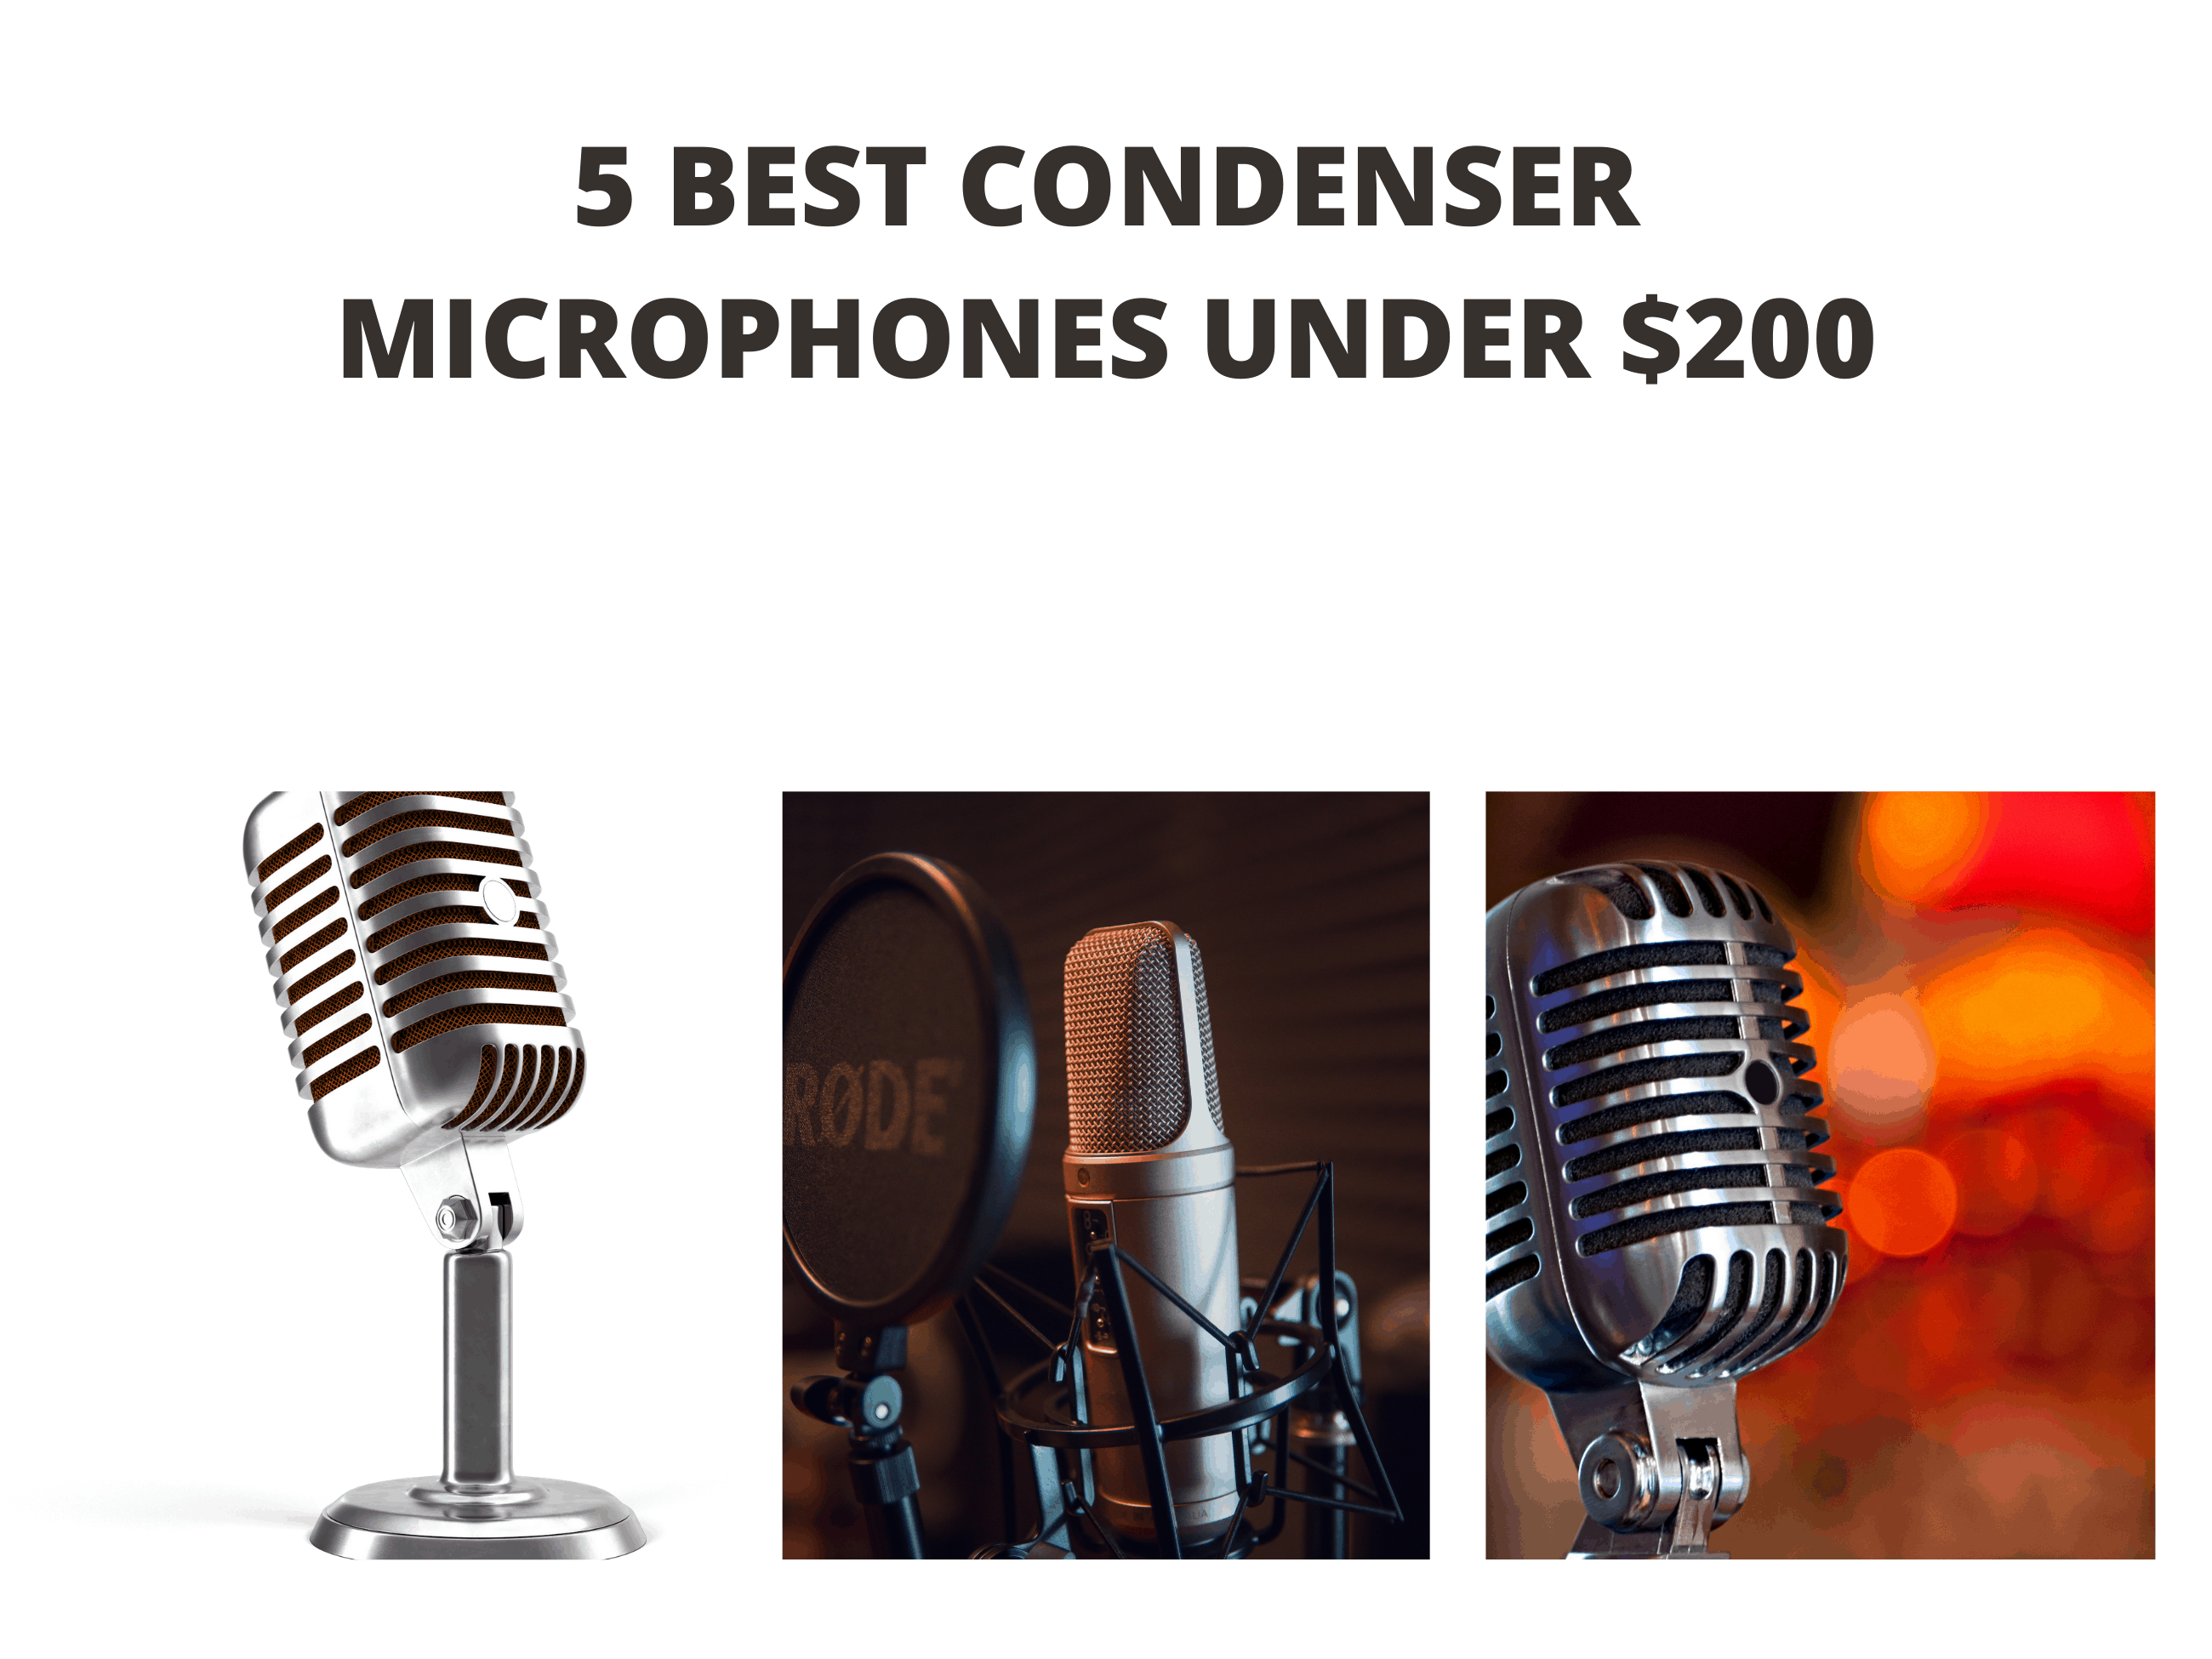 5 Best Condenser Microphones under $200